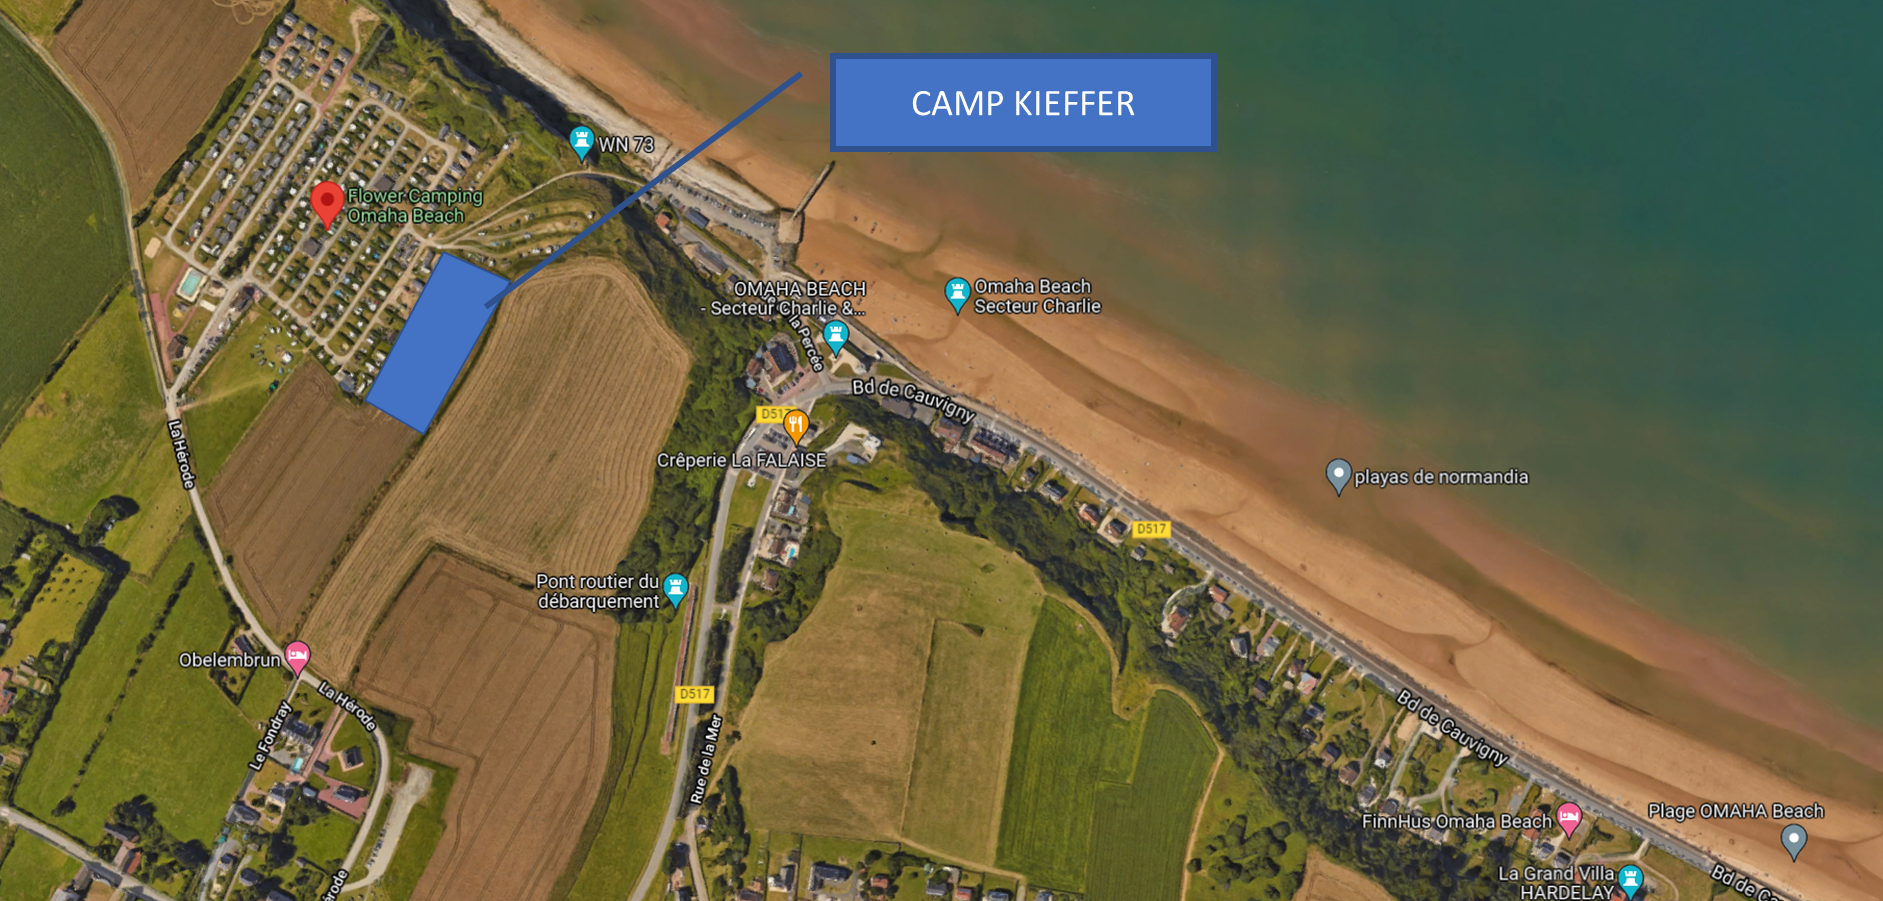 Camp Kieffer - Vierville sur mer